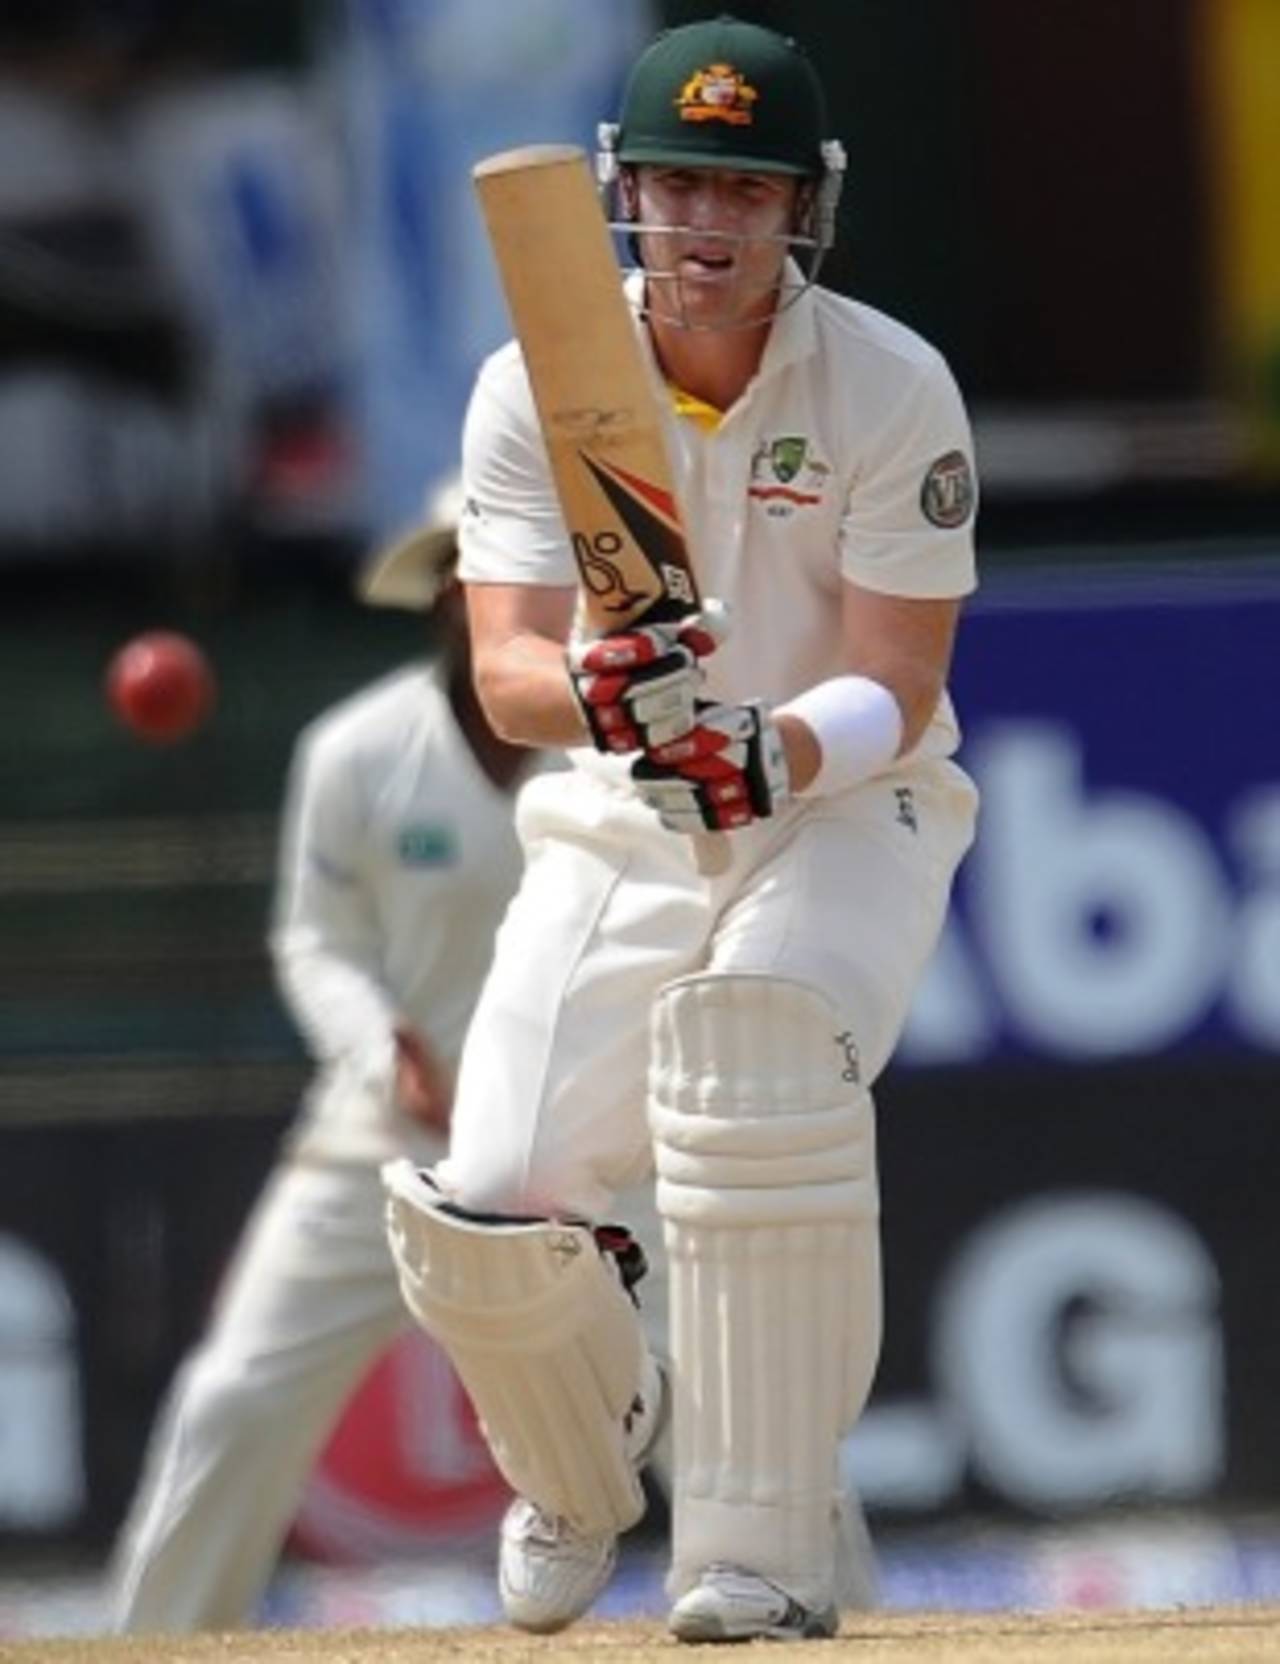 Brad Haddin defends during his 30, Sri Lanka v Australia, 3rd Test, Colombo, 5th day, September 20, 2011